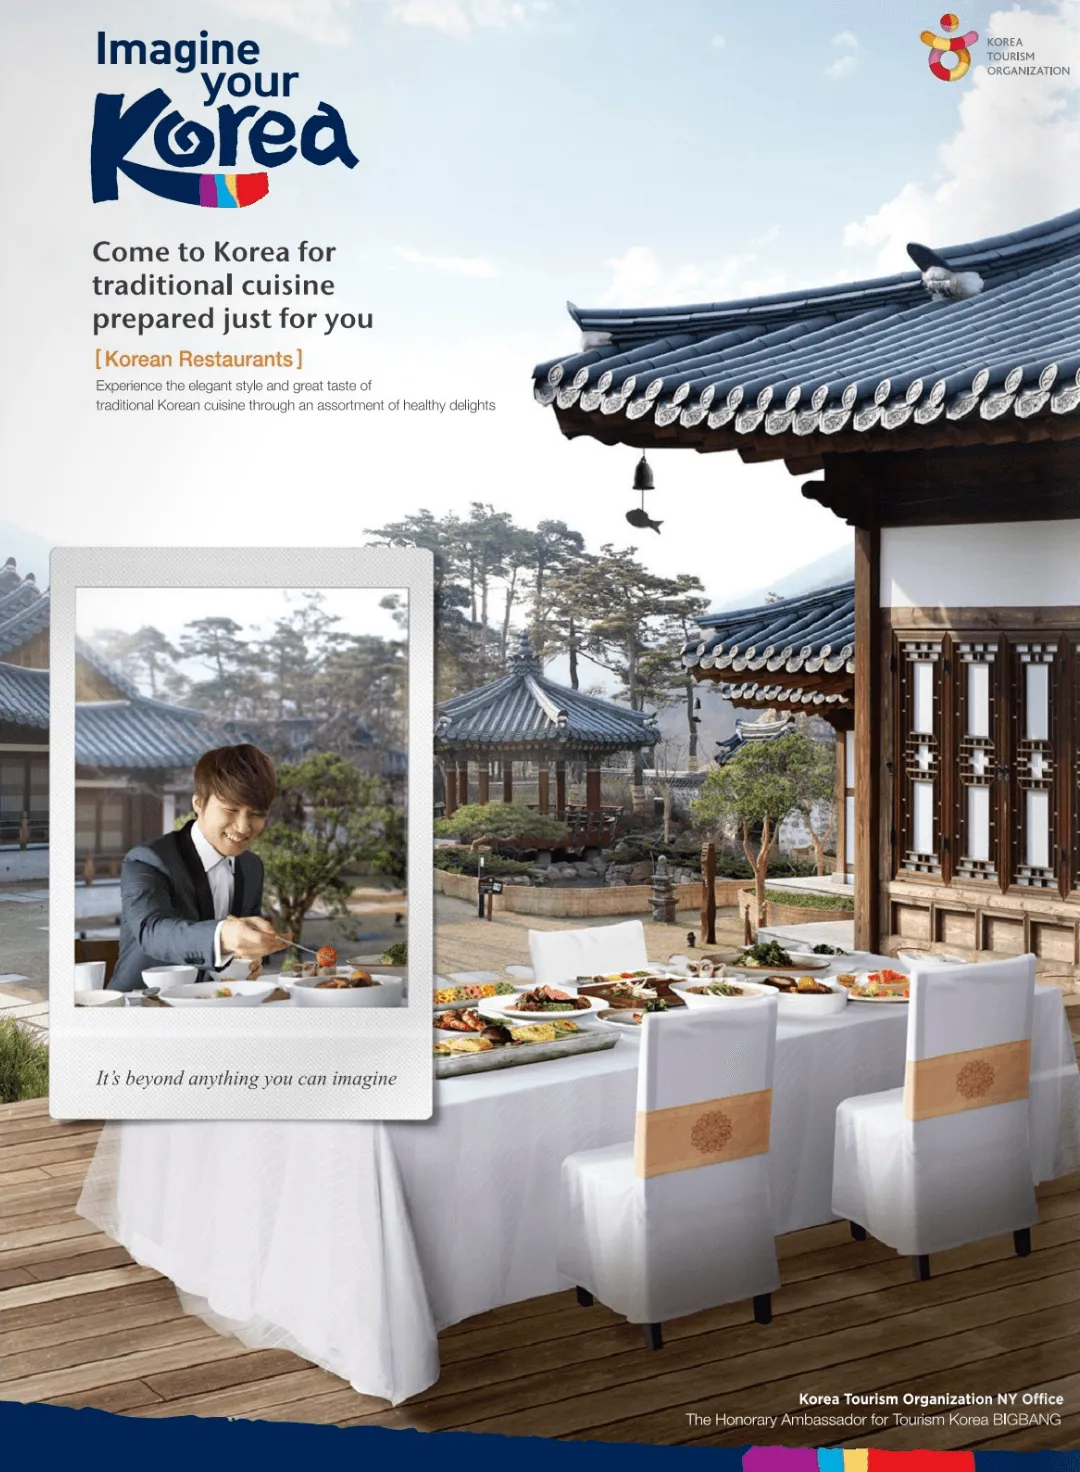 Campagne de marketing réalisée par Imagine your Korea en 2014